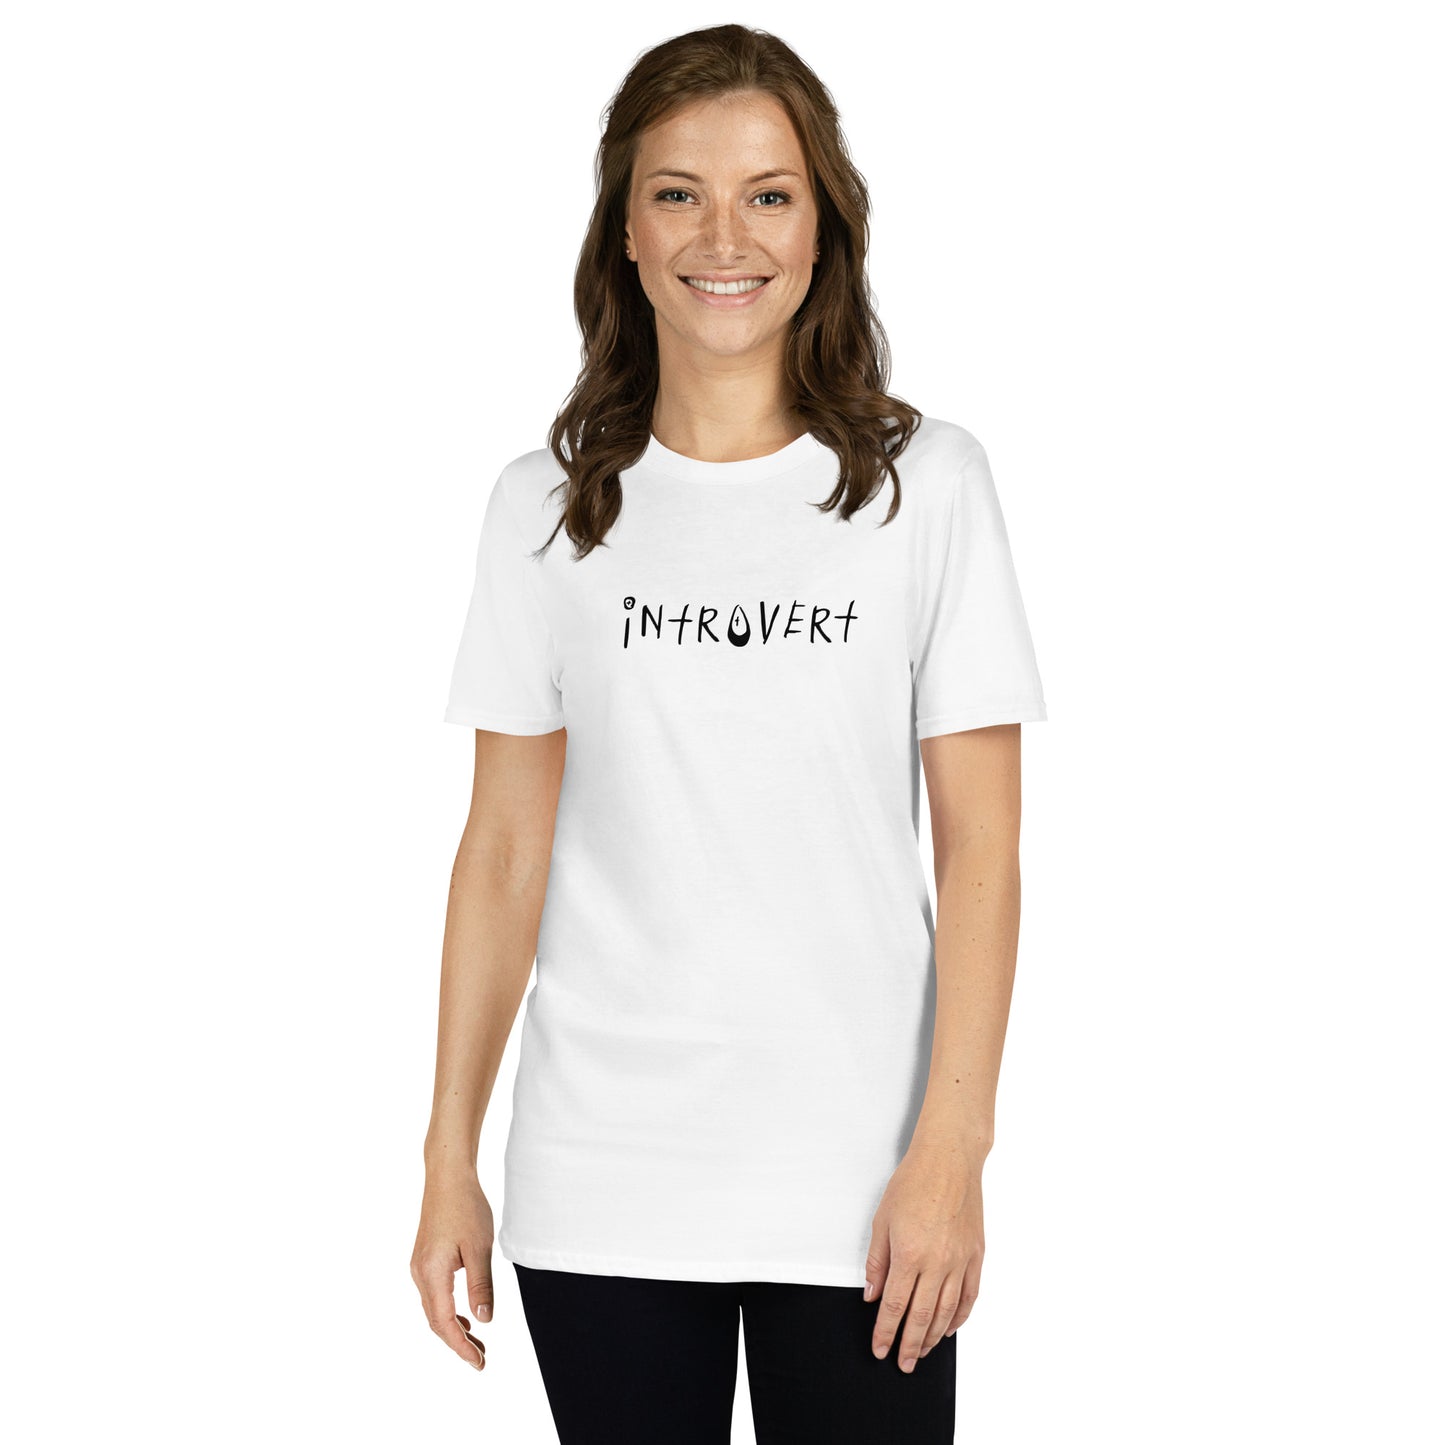 "Introvert" Short-Sleeve Unisex T-Shirt